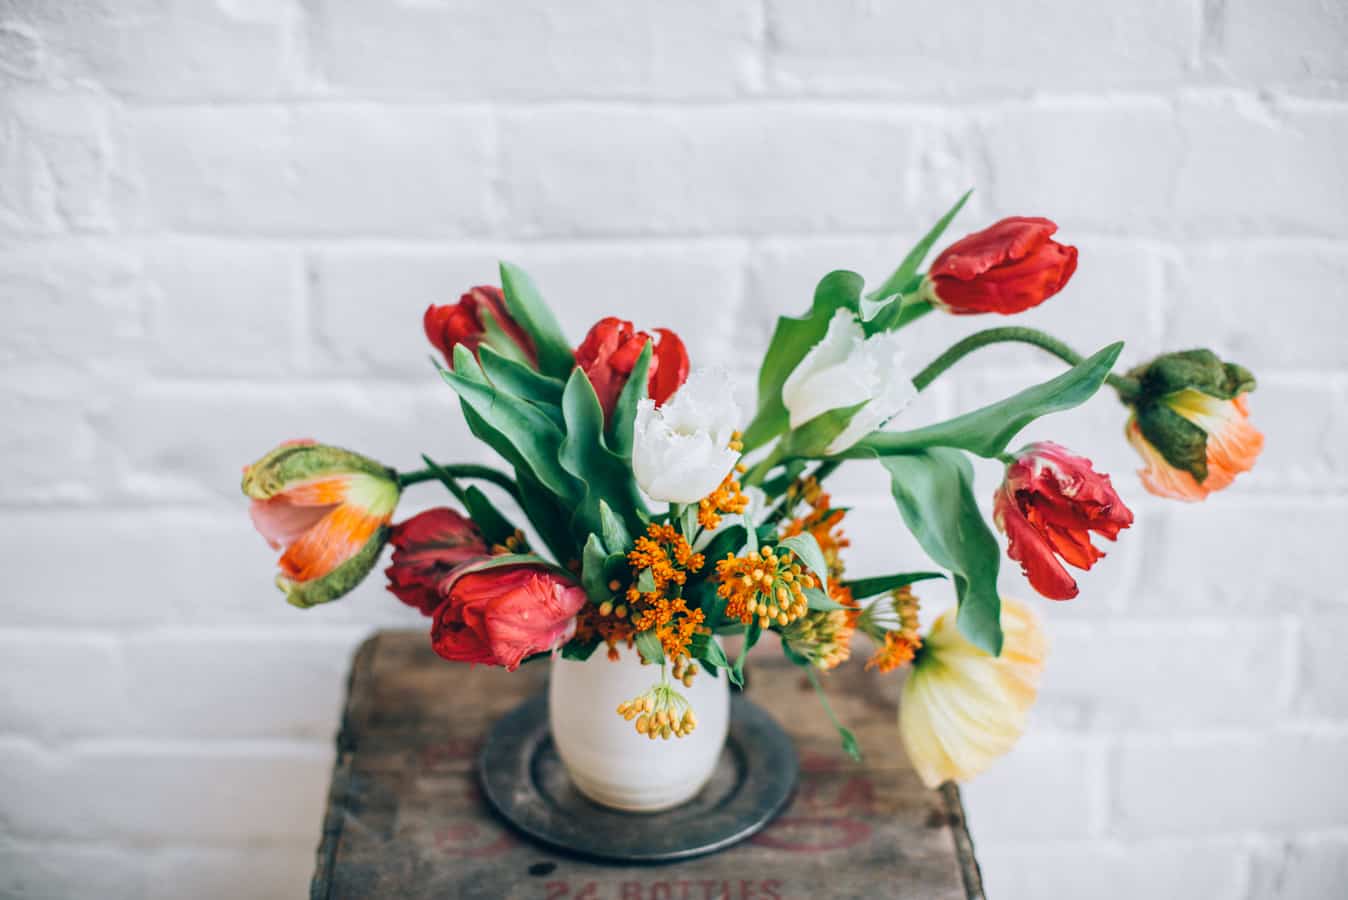 Dutch inspired flower arrangement